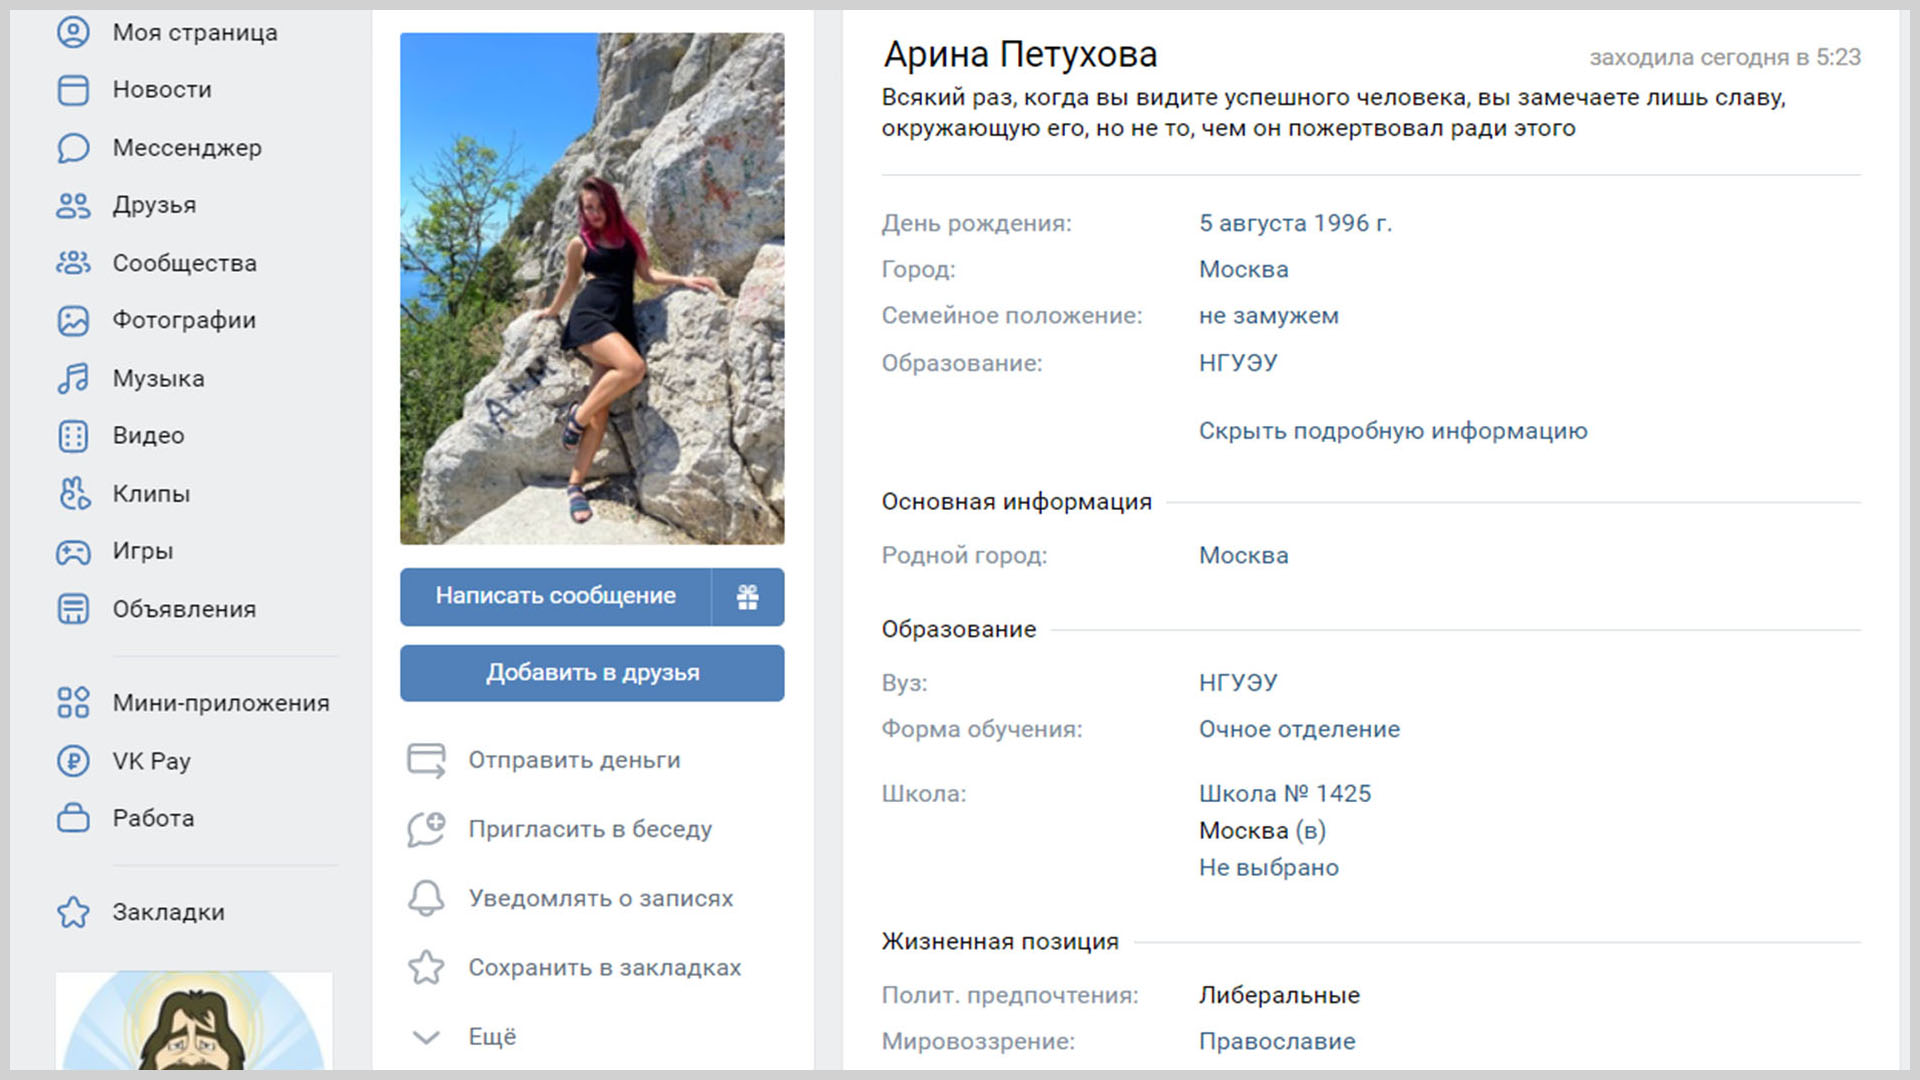 Скриншот персональной страницы Арины Петуховой в социальной сети «ВКонтакте».